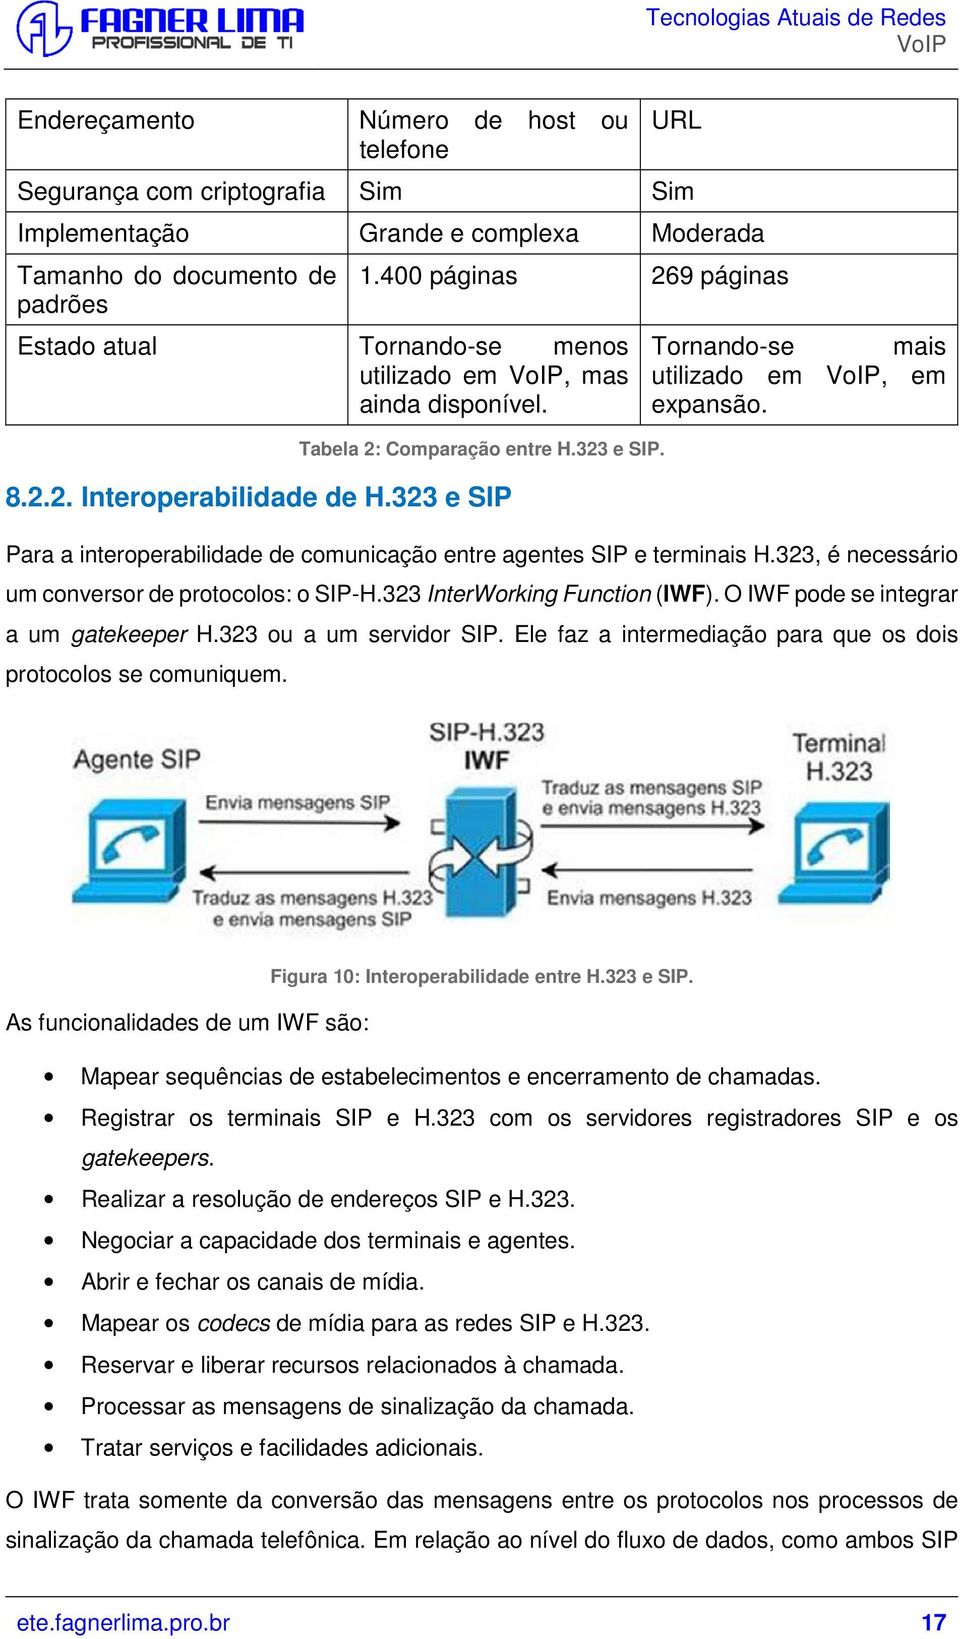 323 e SIP Tornando-se mais utilizado em, em expansão. Para a interoperabilidade de comunicação entre agentes SIP e terminais H.323, é necessário um conversor de protocolos: o SIP-H.